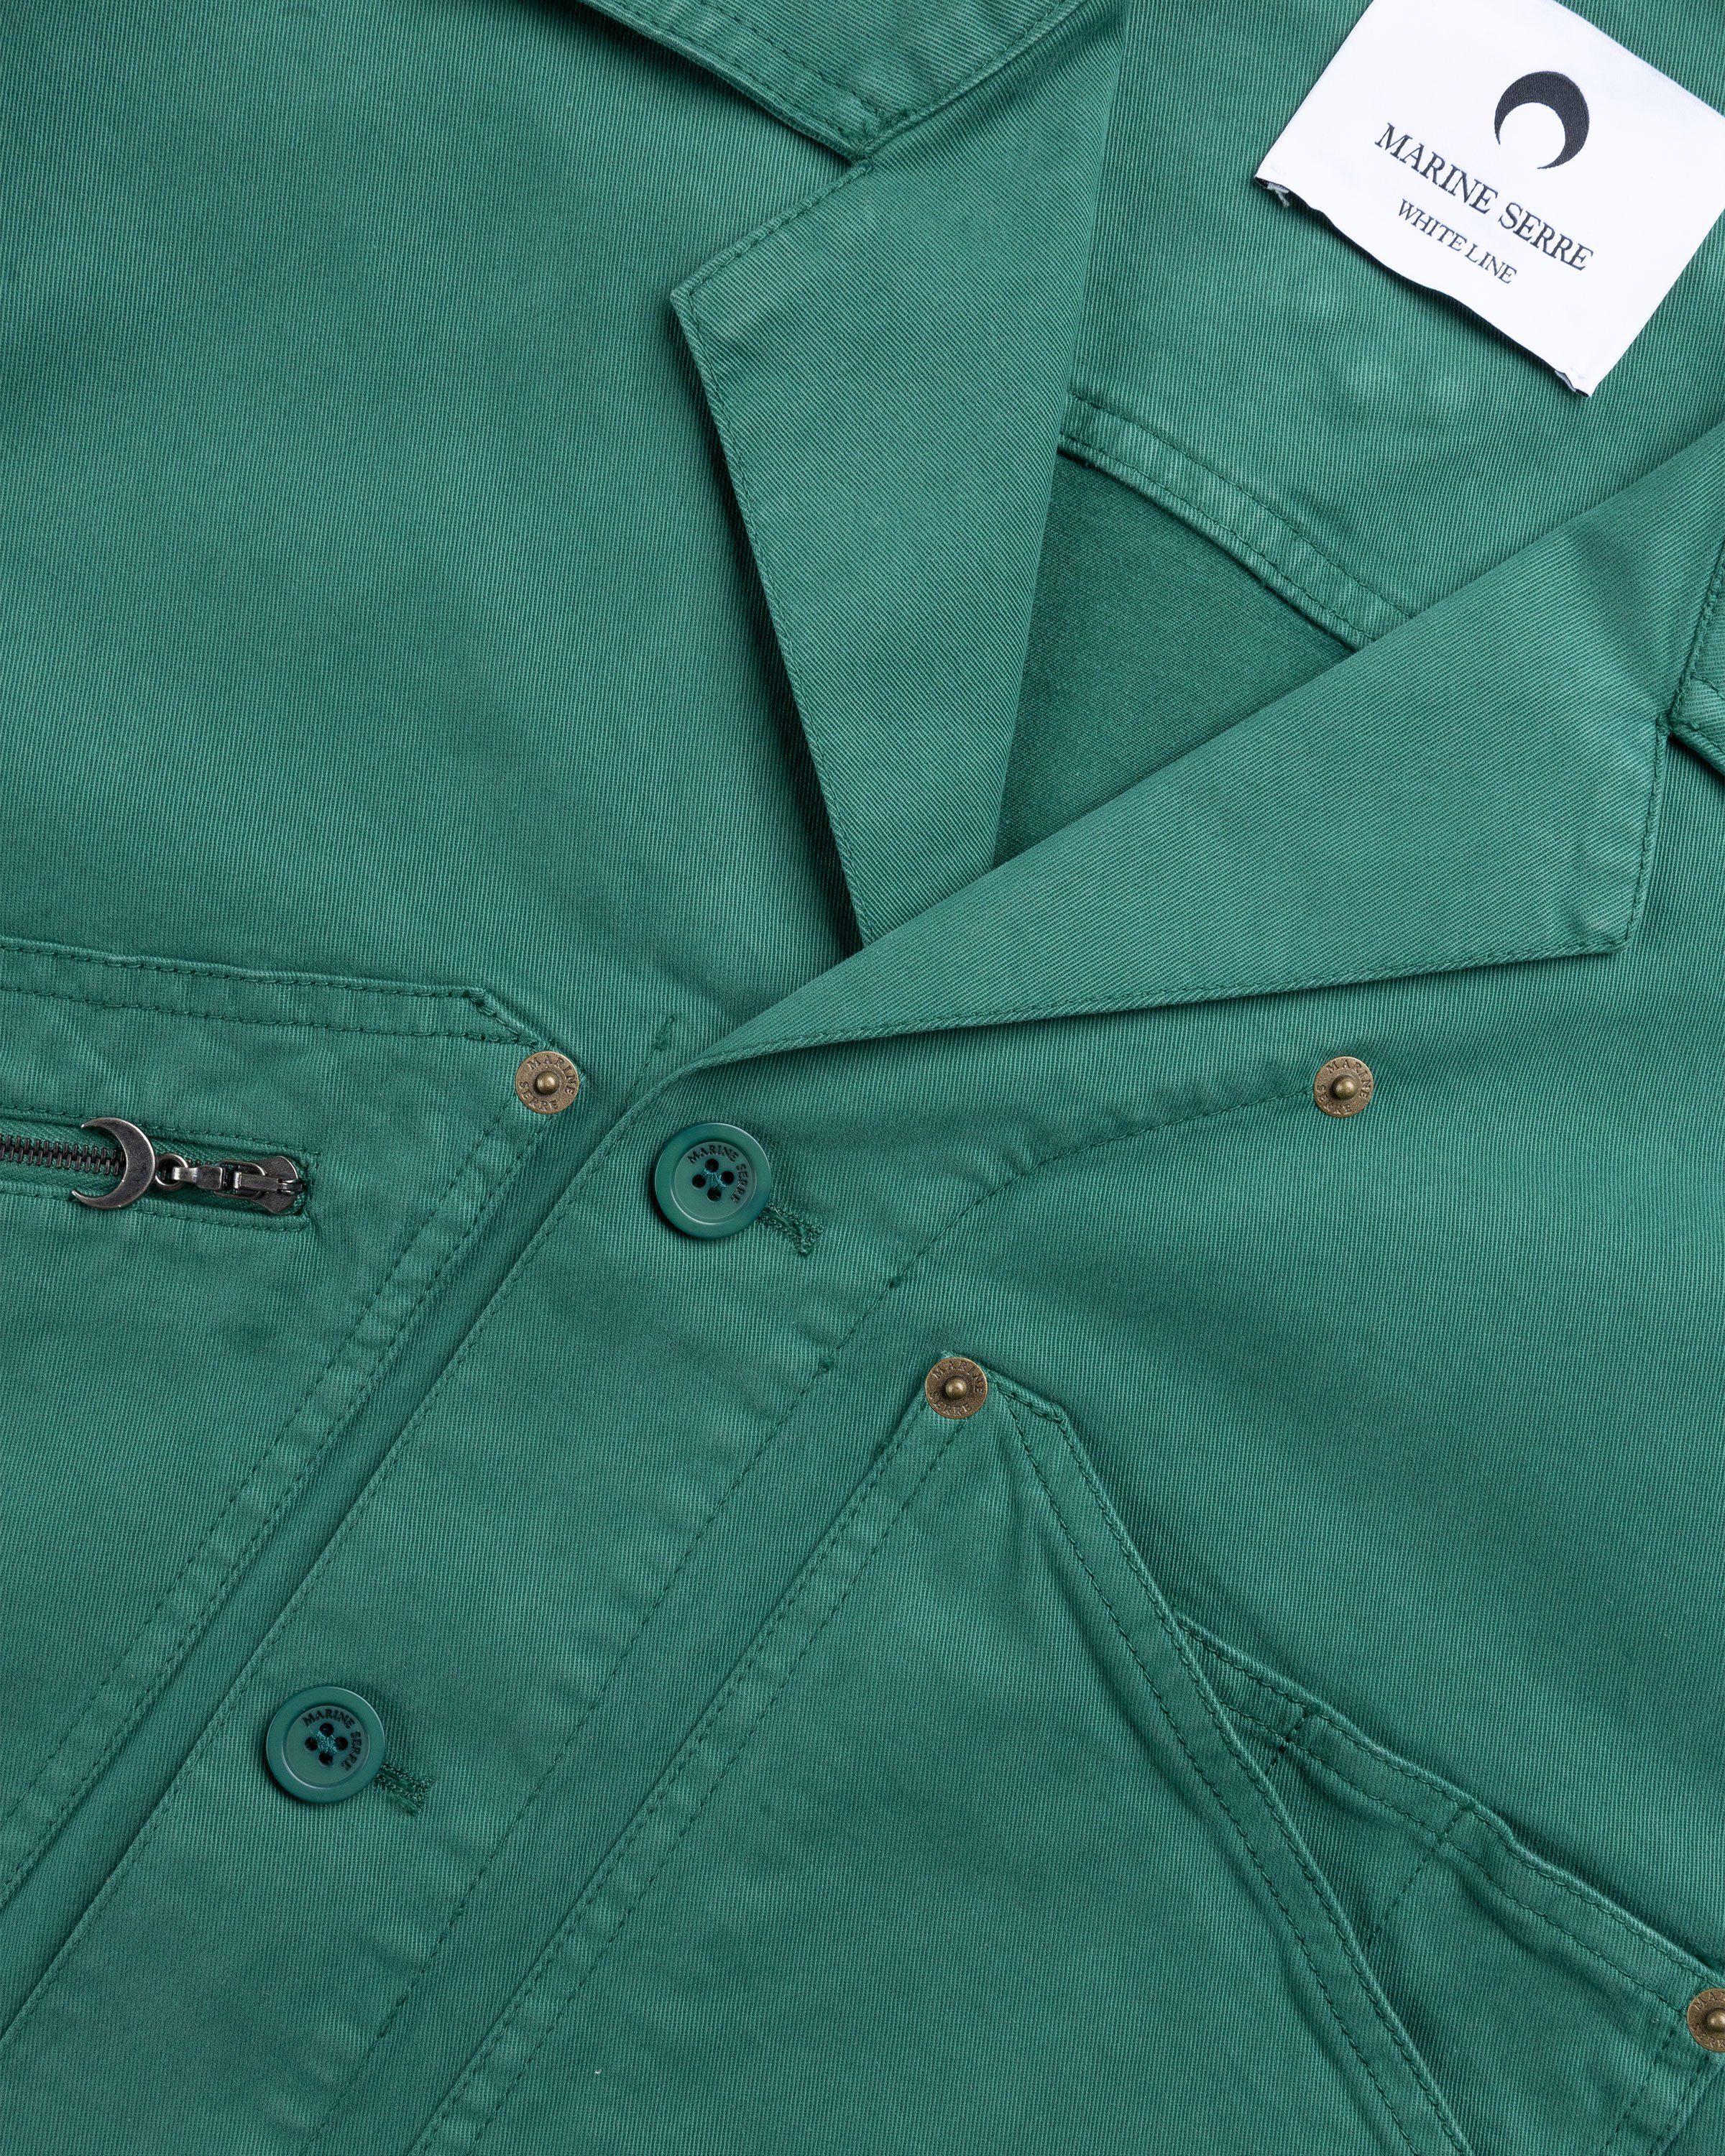 Marine Serre - Workwear Jacket Evergreen - Clothing - Green - Image 5